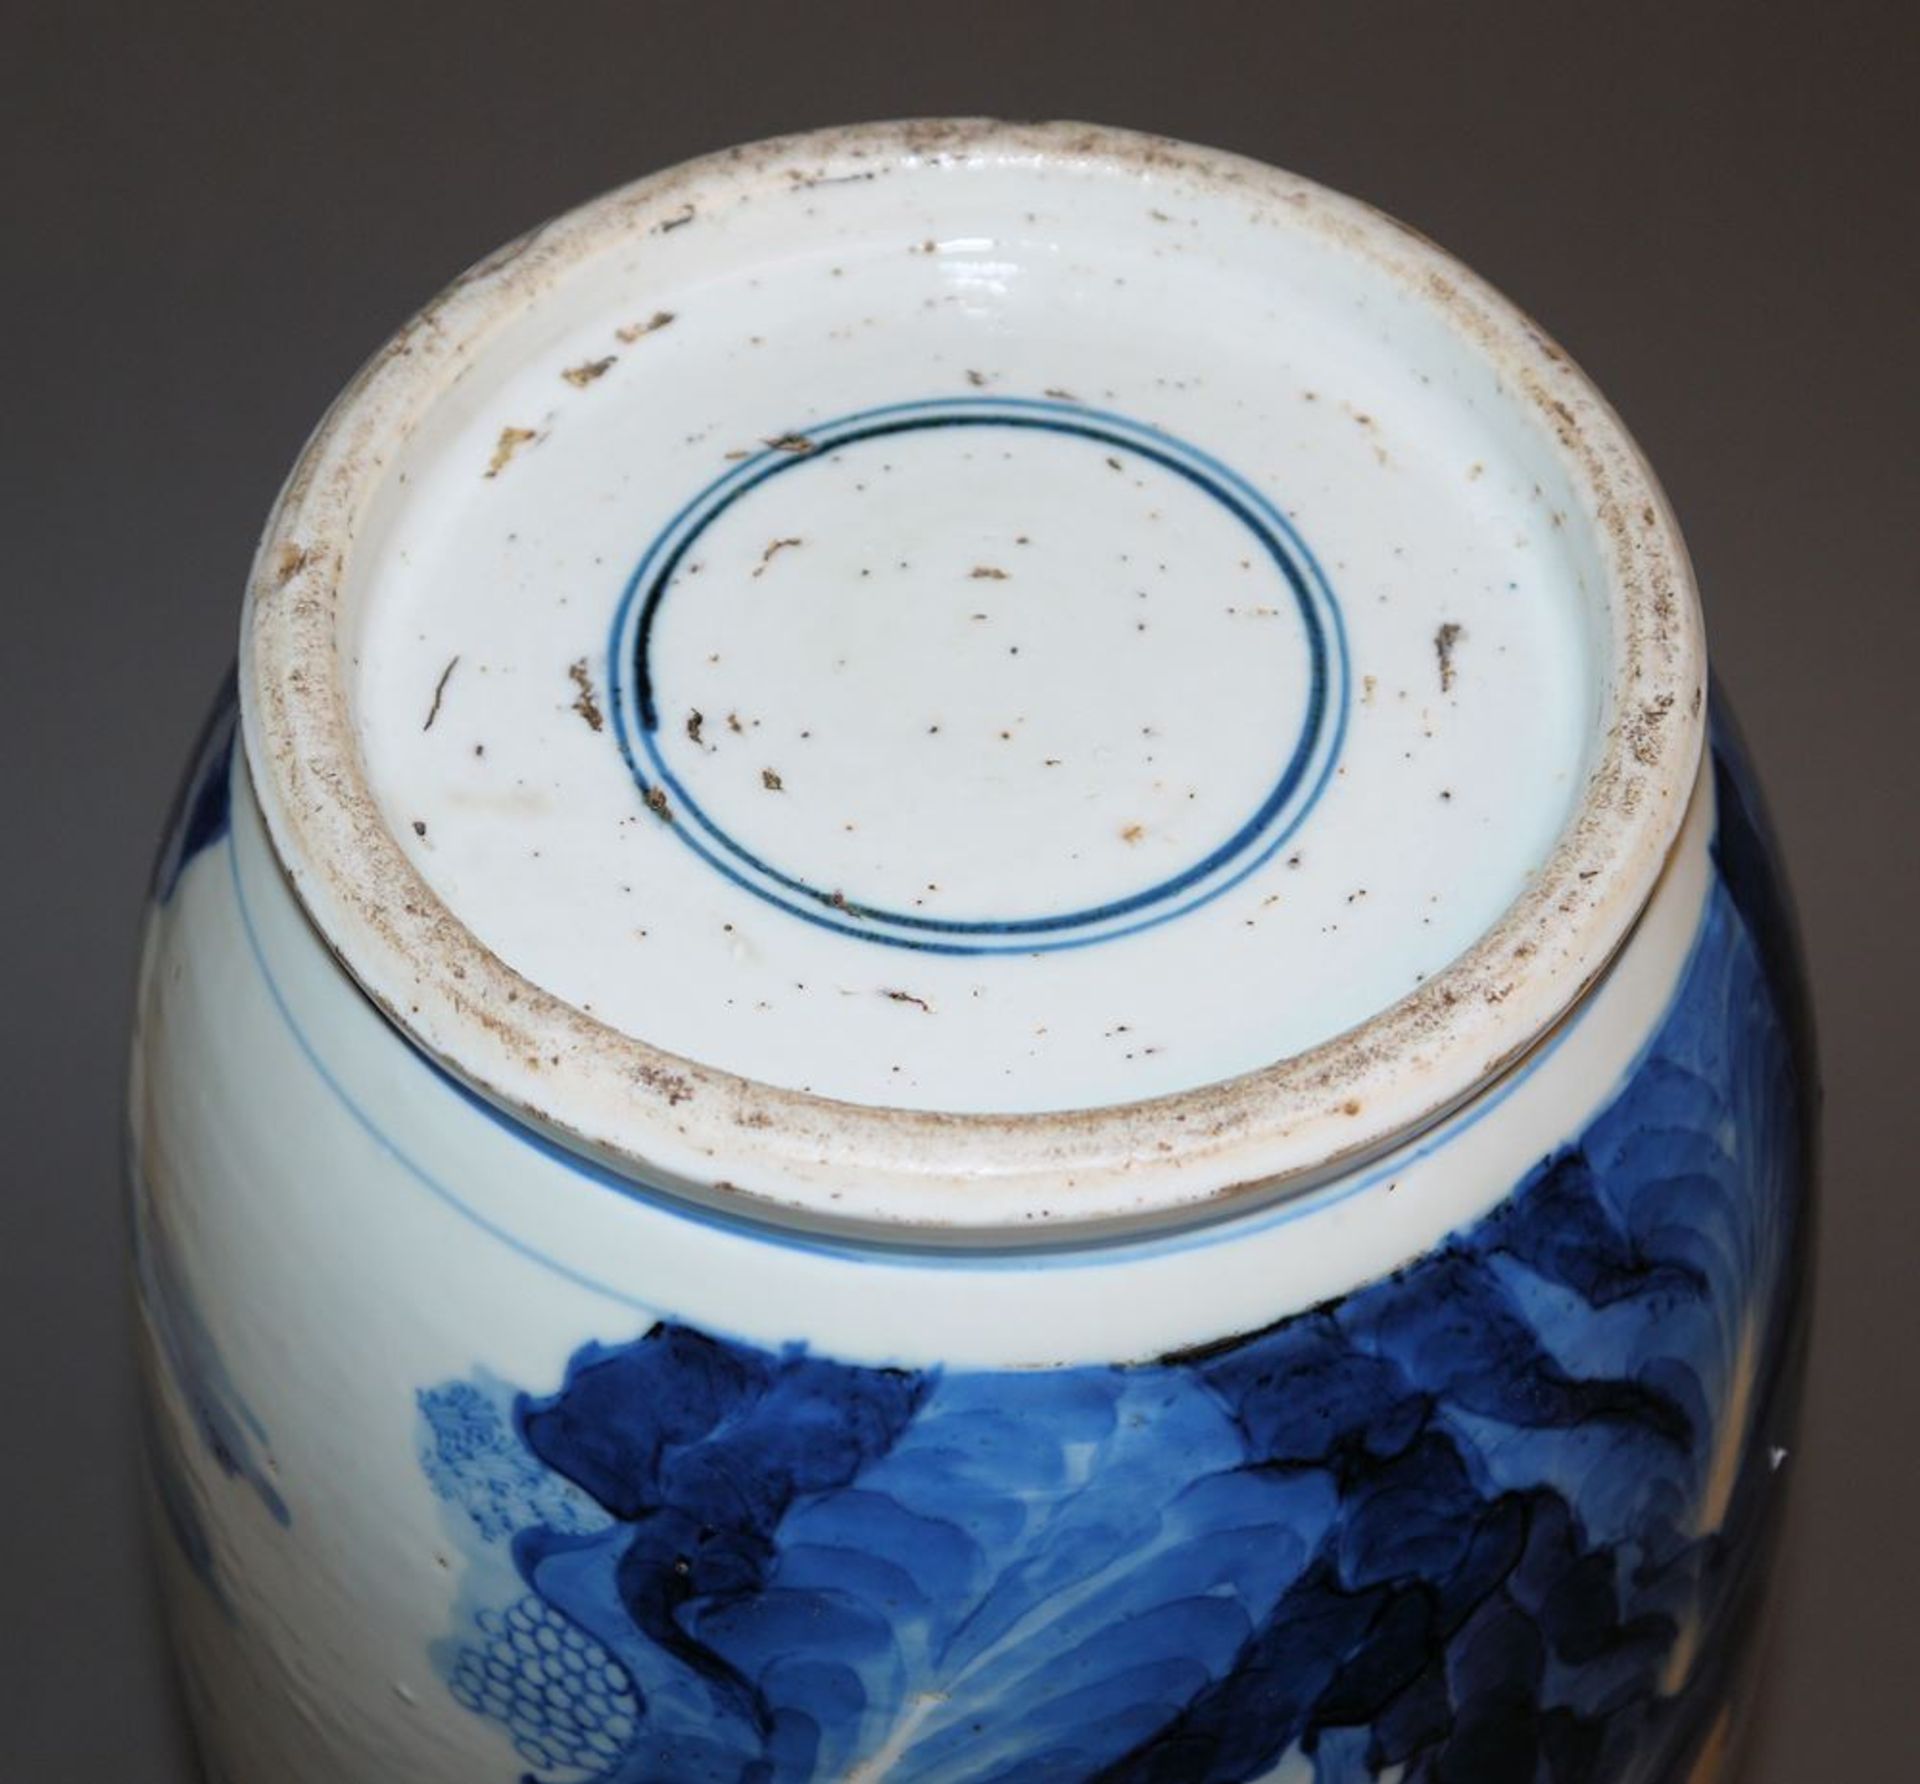 Große Blauweiß-Vase, Form Bangcui, wohl Guangxu-Zeit, China, Ende 19. Jh. - Bild 5 aus 5